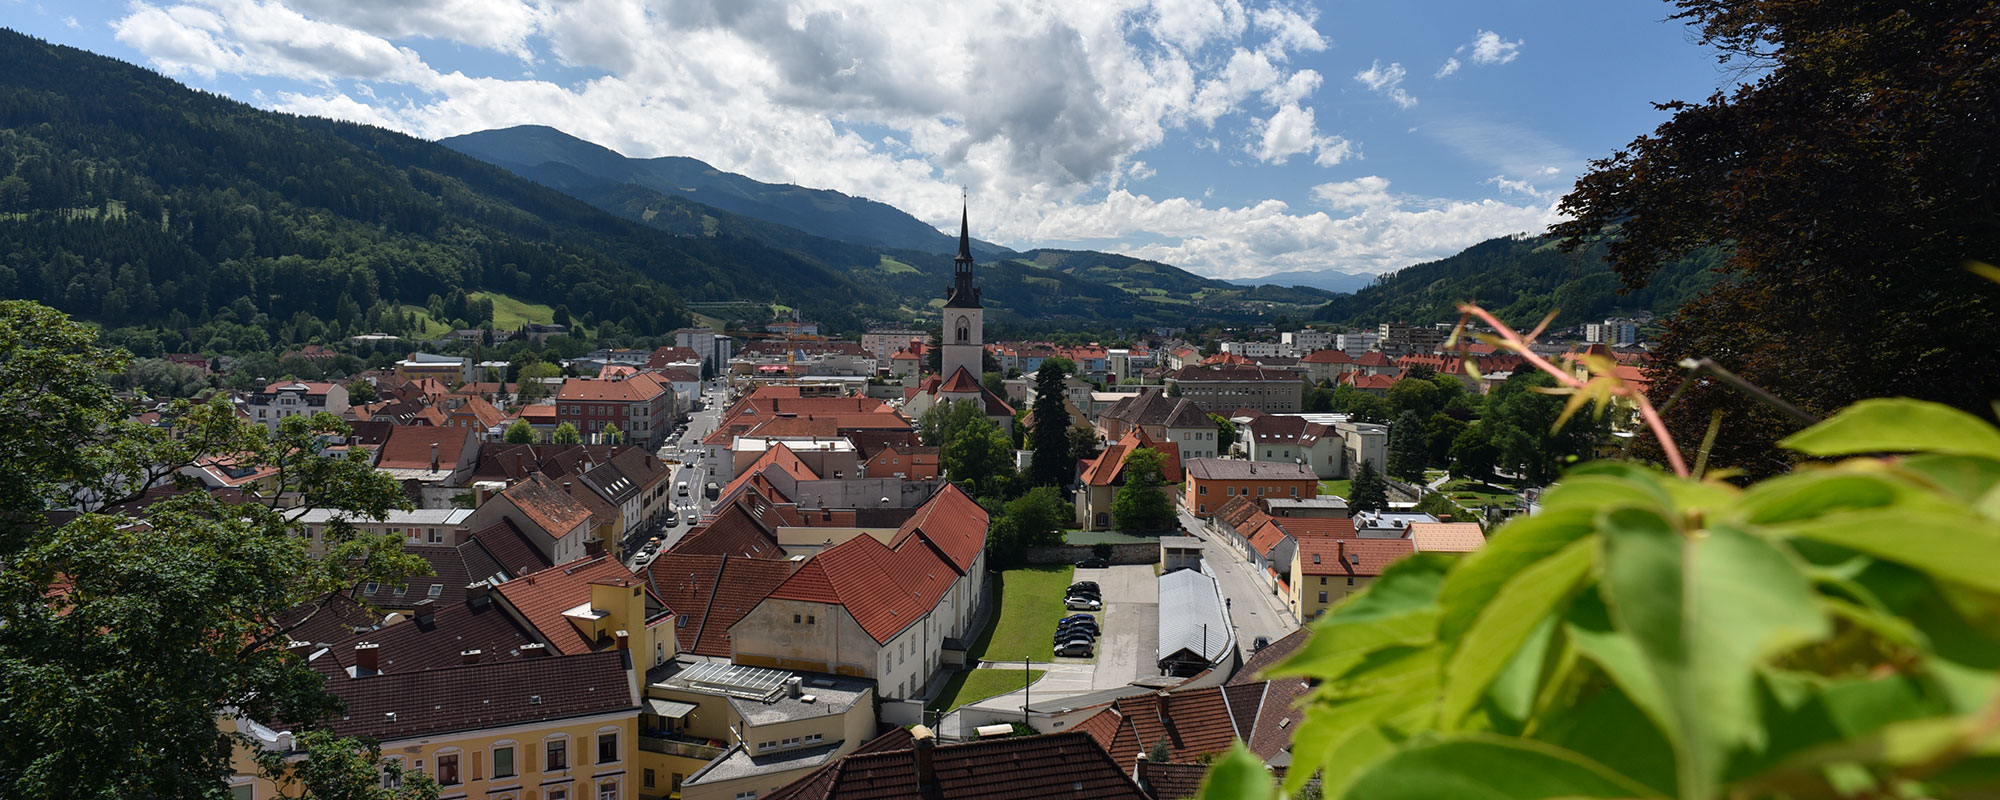 Blick vom Schlossberg auf die Stadt Bruck an der Mur - im Vordergrund die Pfarrkirche und dahinter das herrliche Bergpanorama